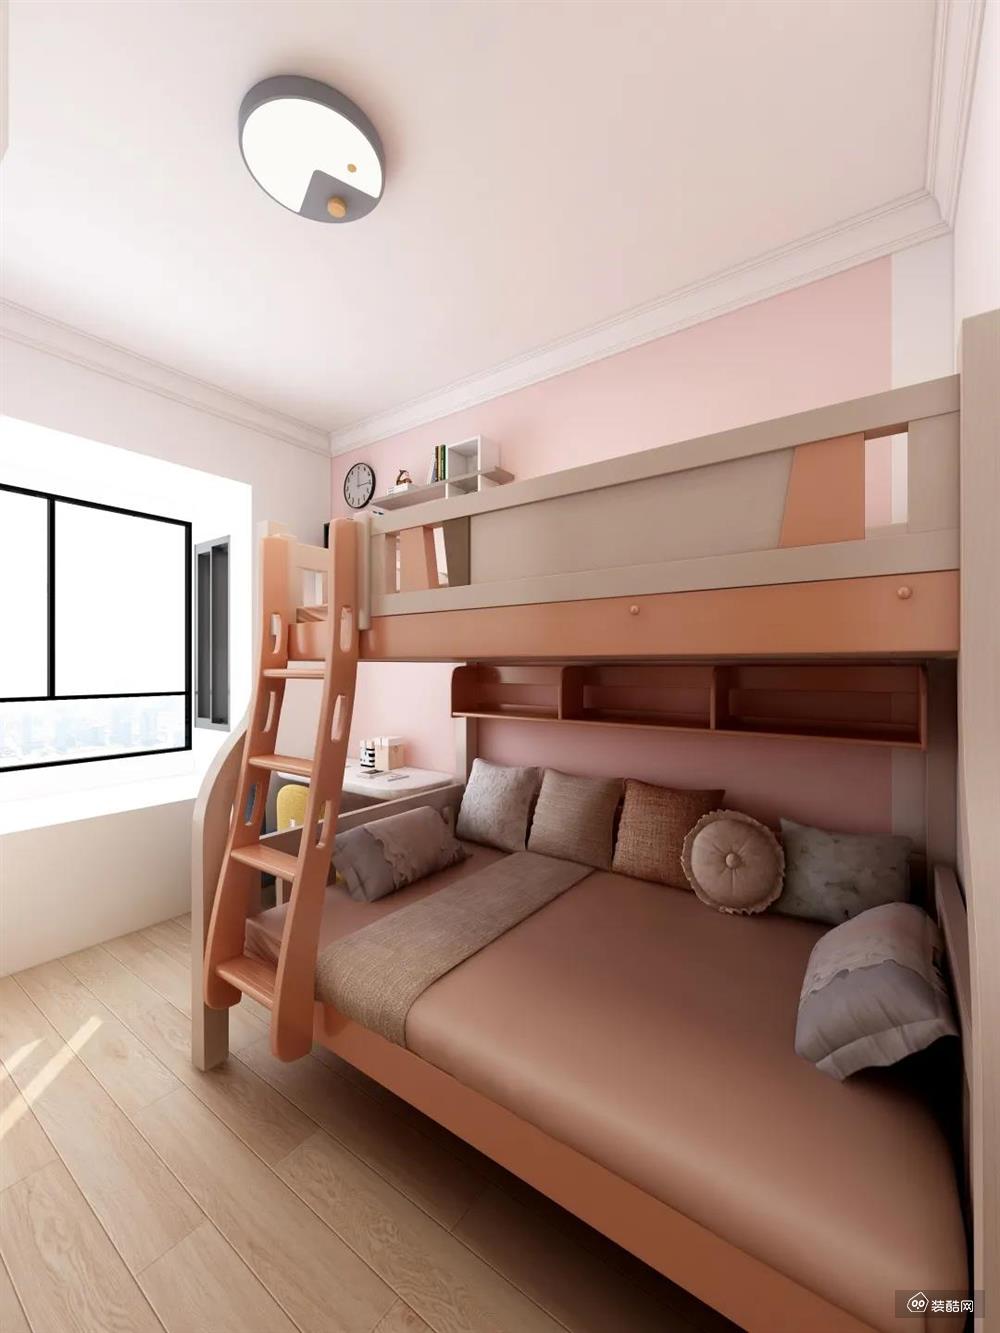 儿童房｜儿童房在色彩上采用了粉白的基调，根据需要采用双层香槟色的床，以床为中心，左设写字台和书架，以造型、色彩凸显家居质感，简约而舒适。